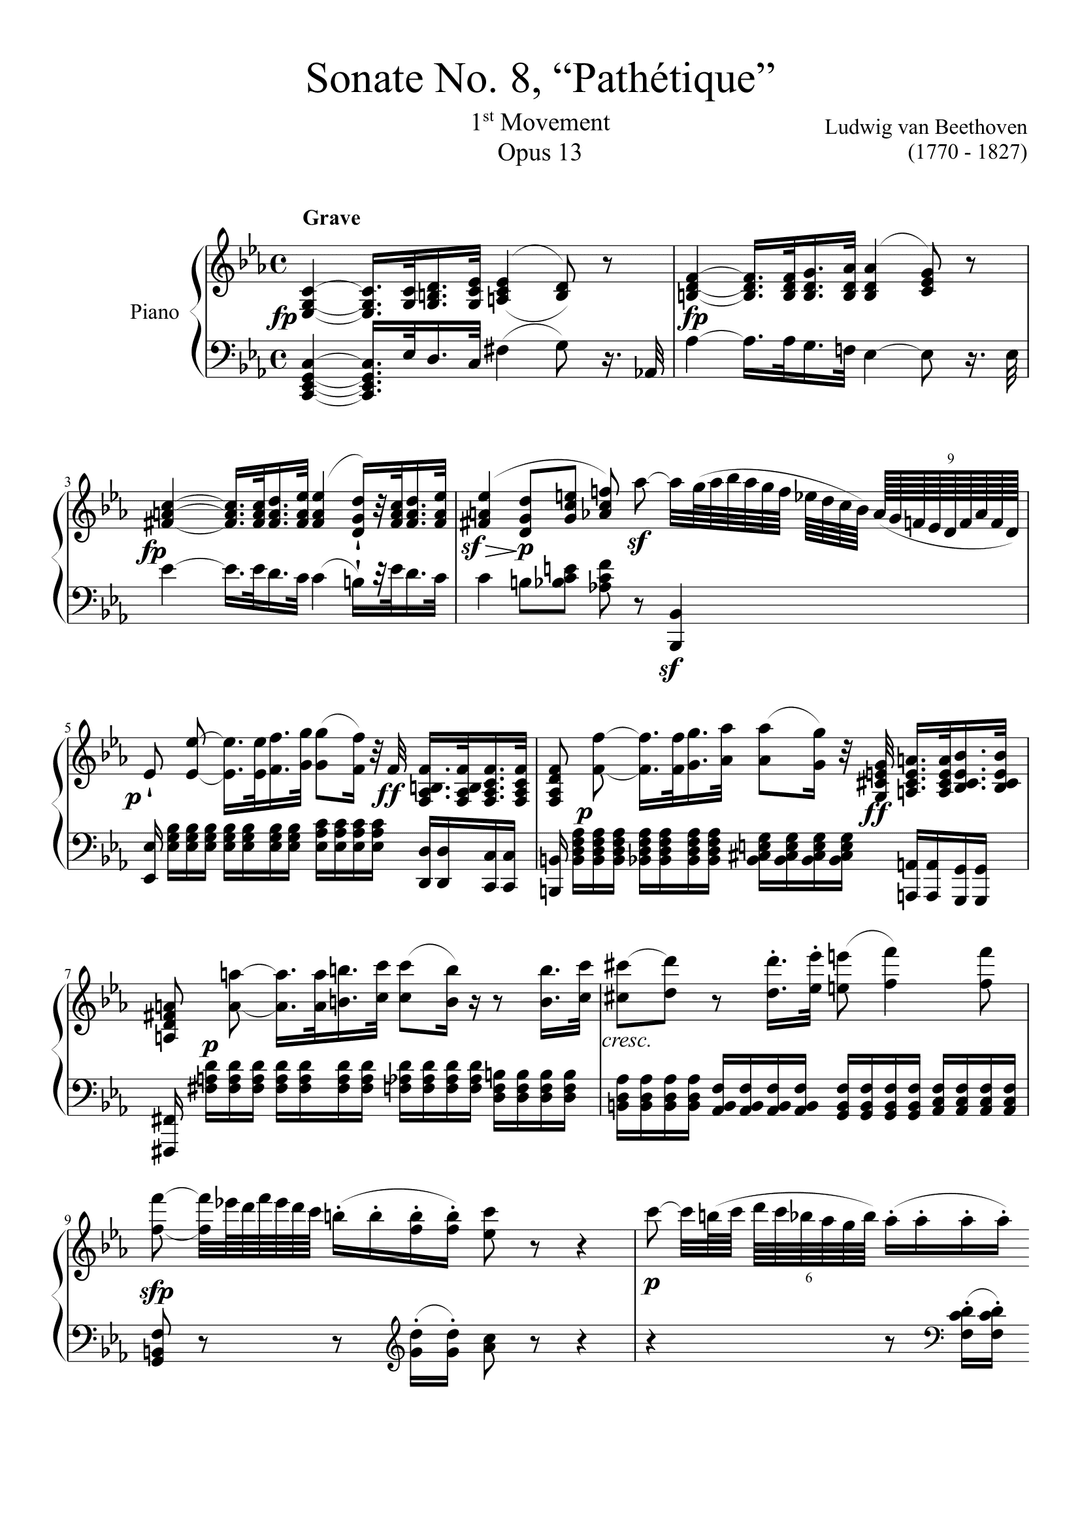 Sonata No. 8 Op. 13: I. Grave